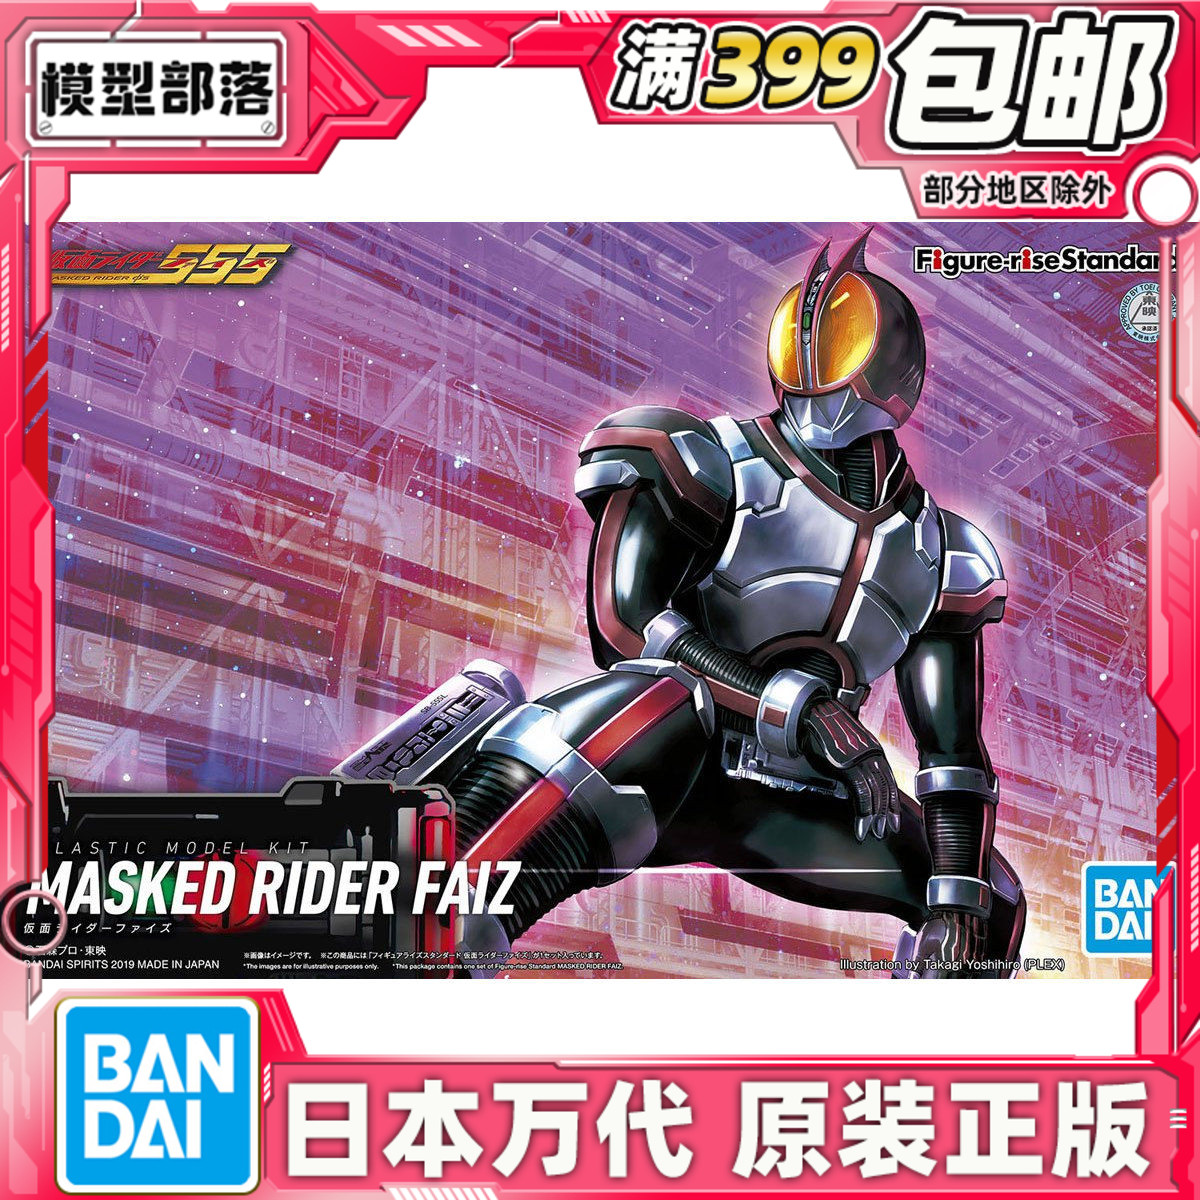 现货 万代 Figure-rise Standard 假面骑士555 FAIZ 拼装 模型